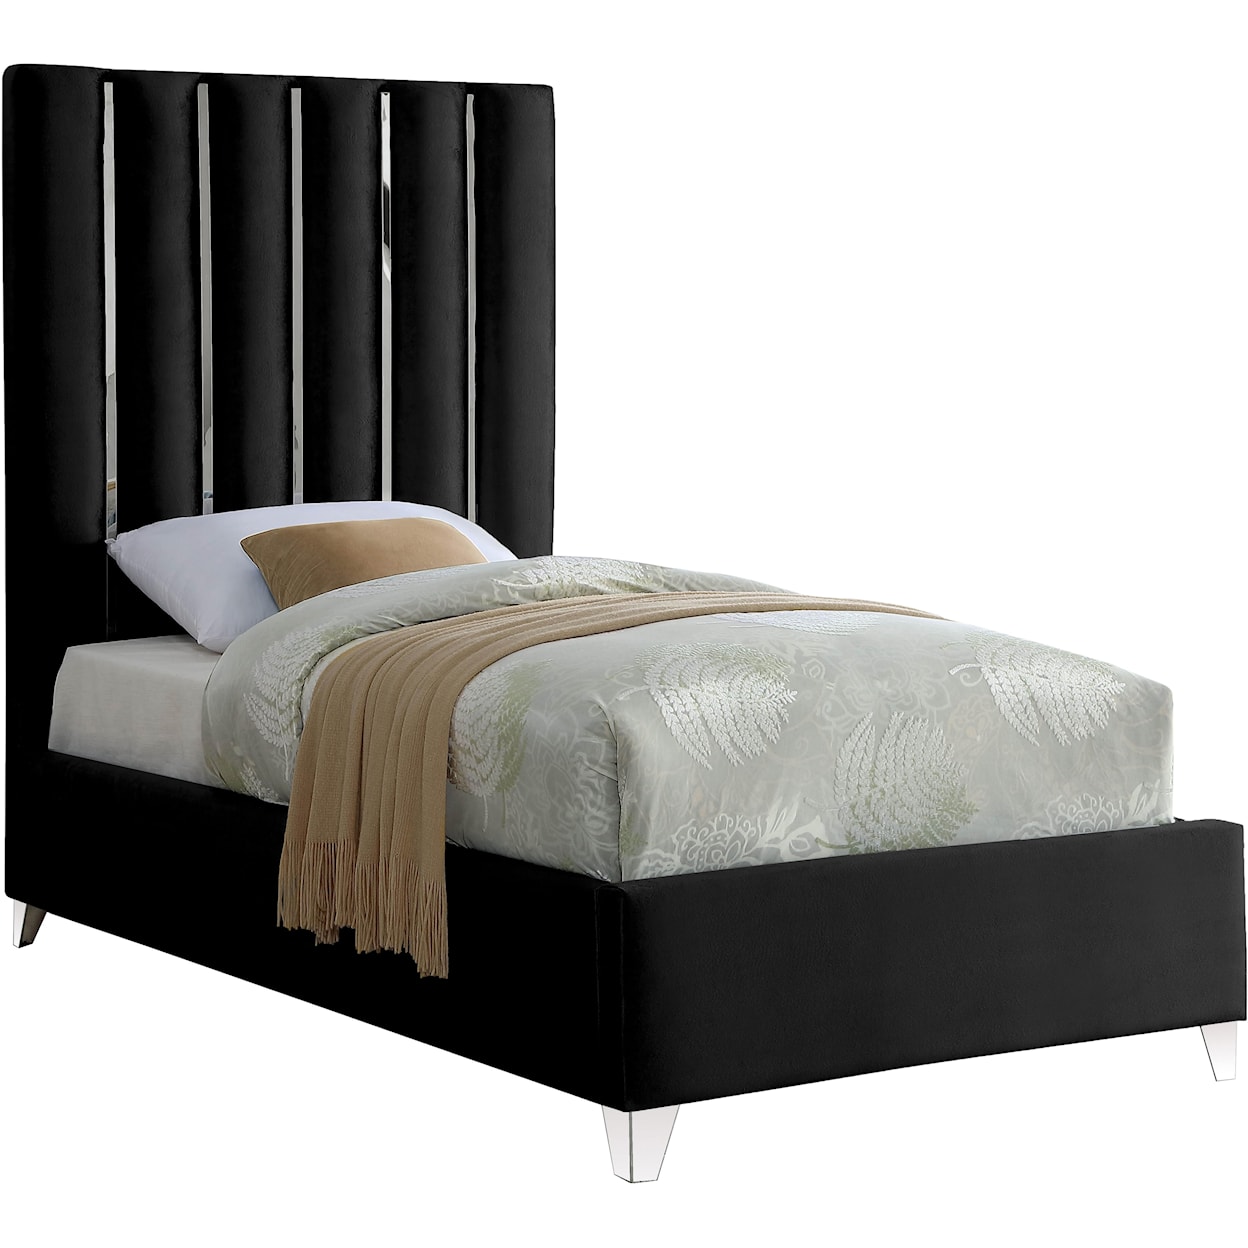 Meridian Furniture Enzo Twin Bed